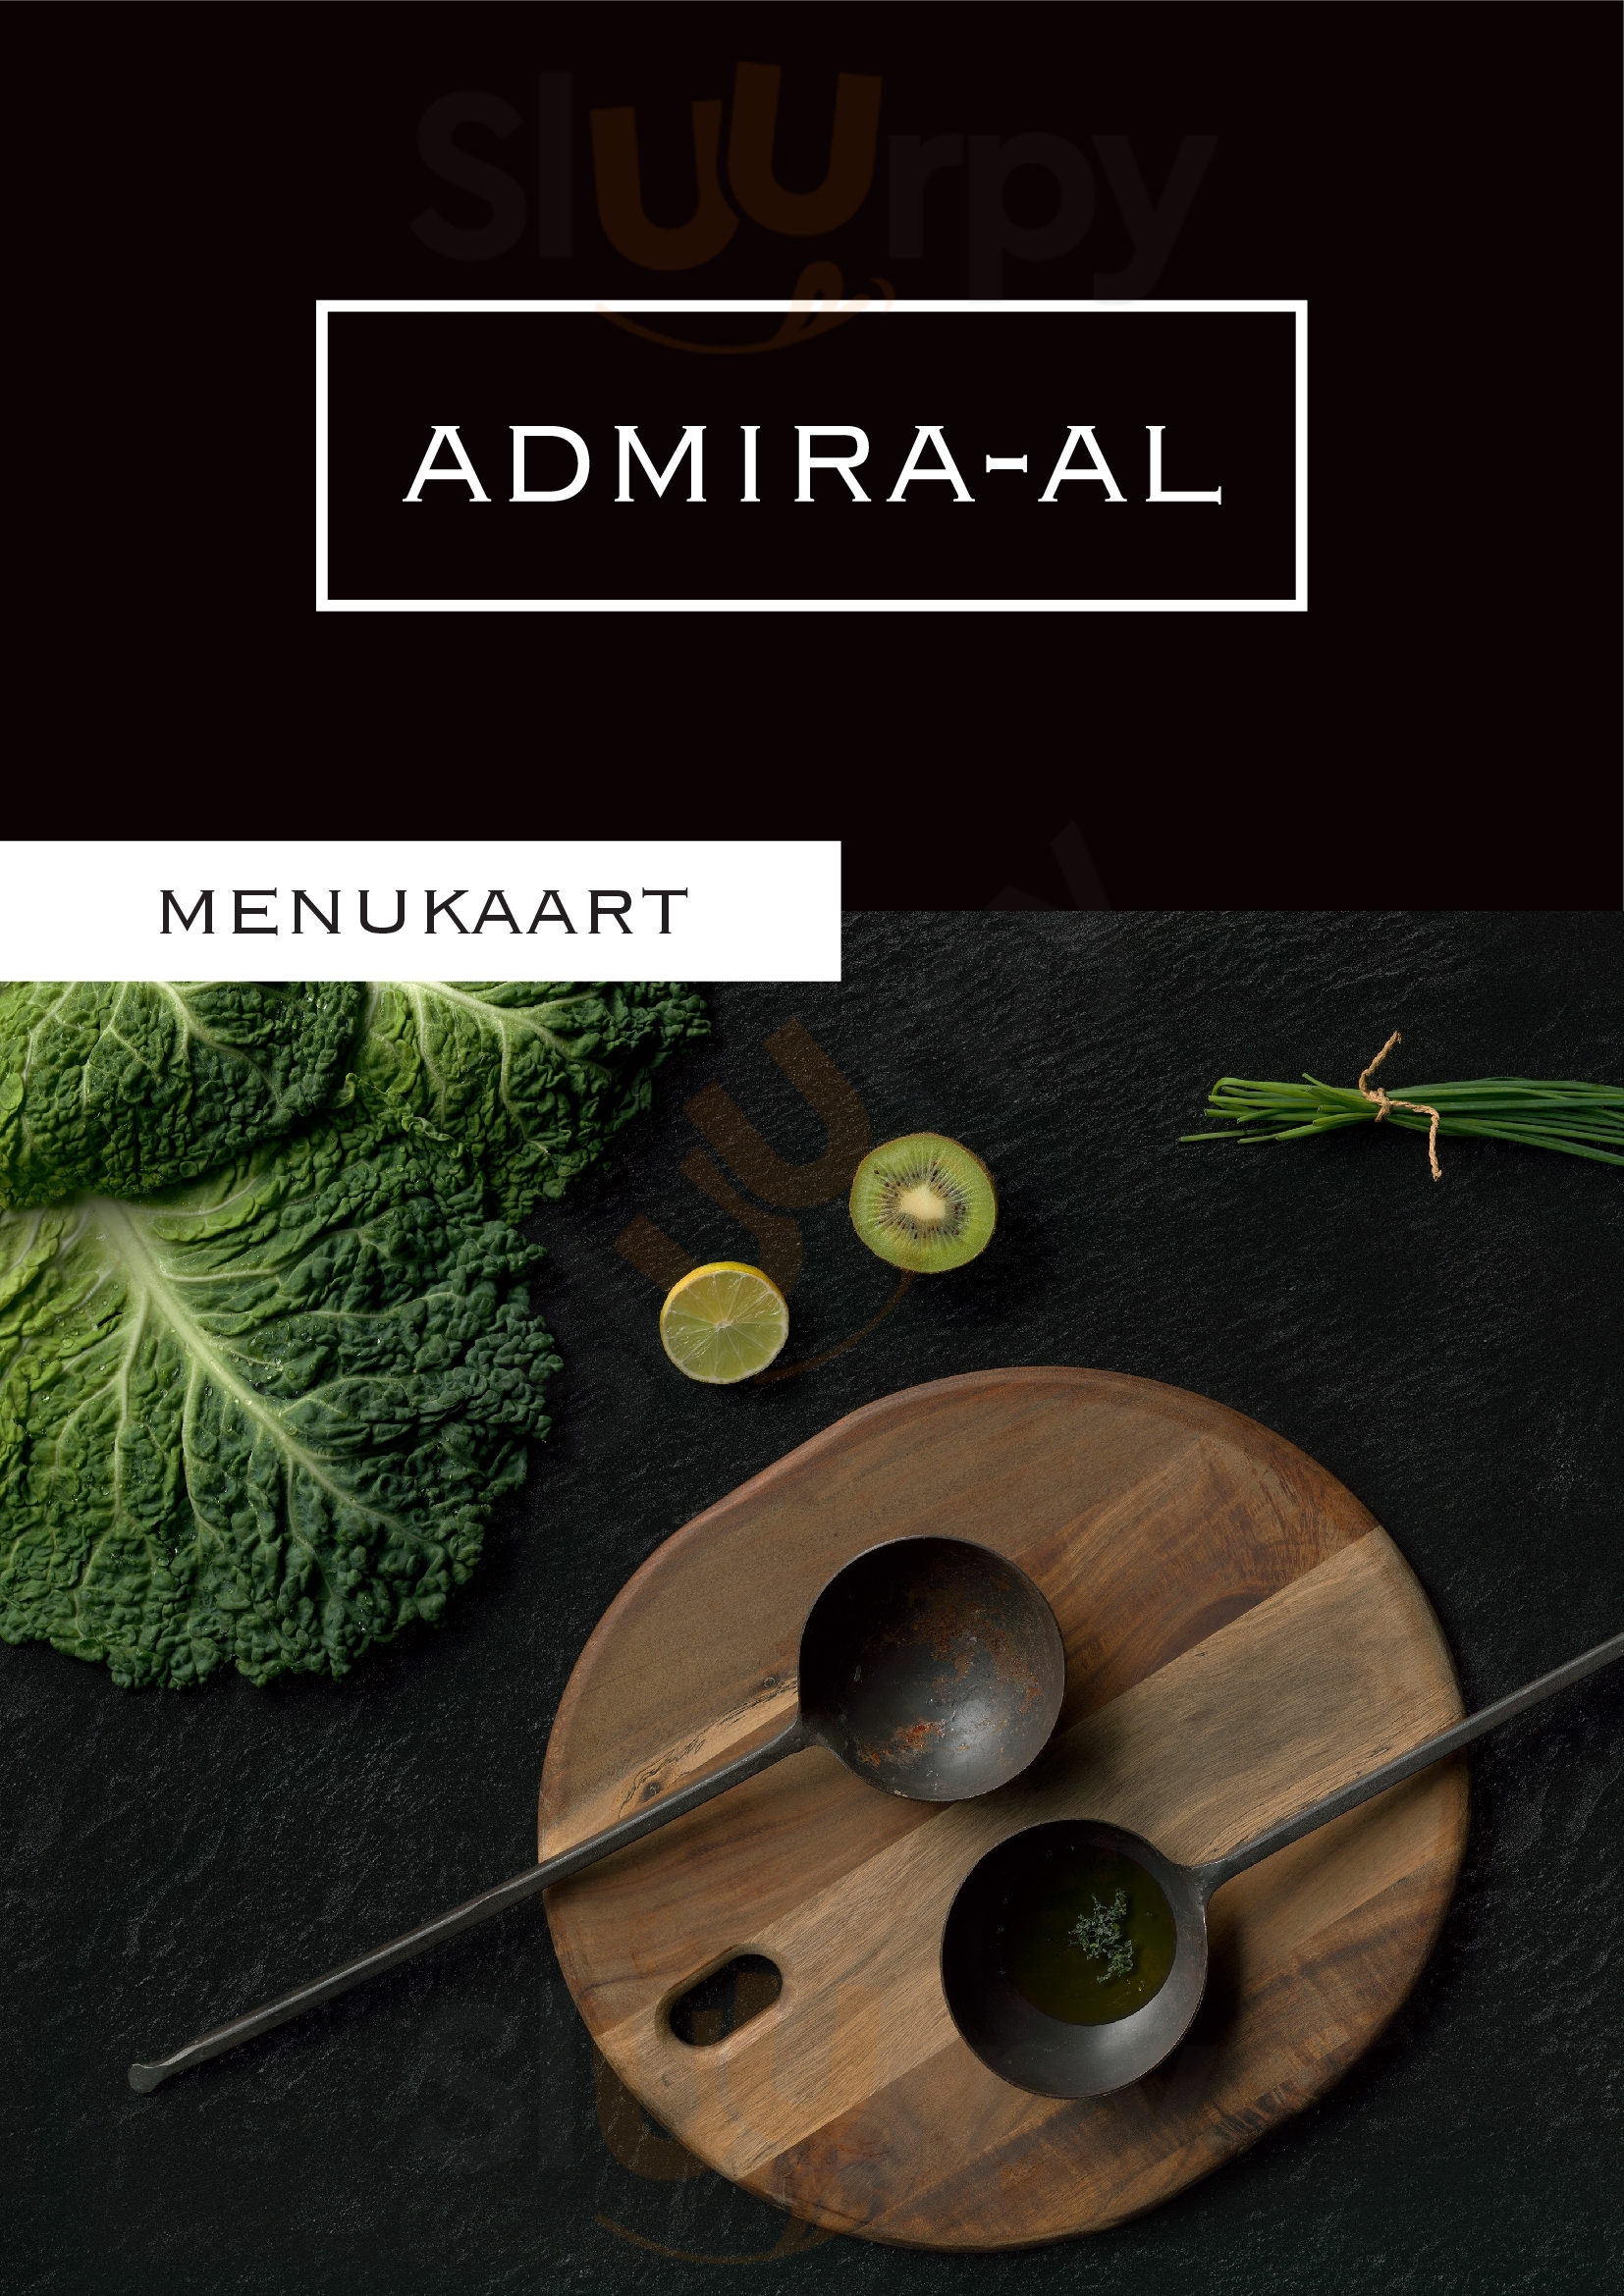 Restaurant Admira-al Heerlen Menu - 1